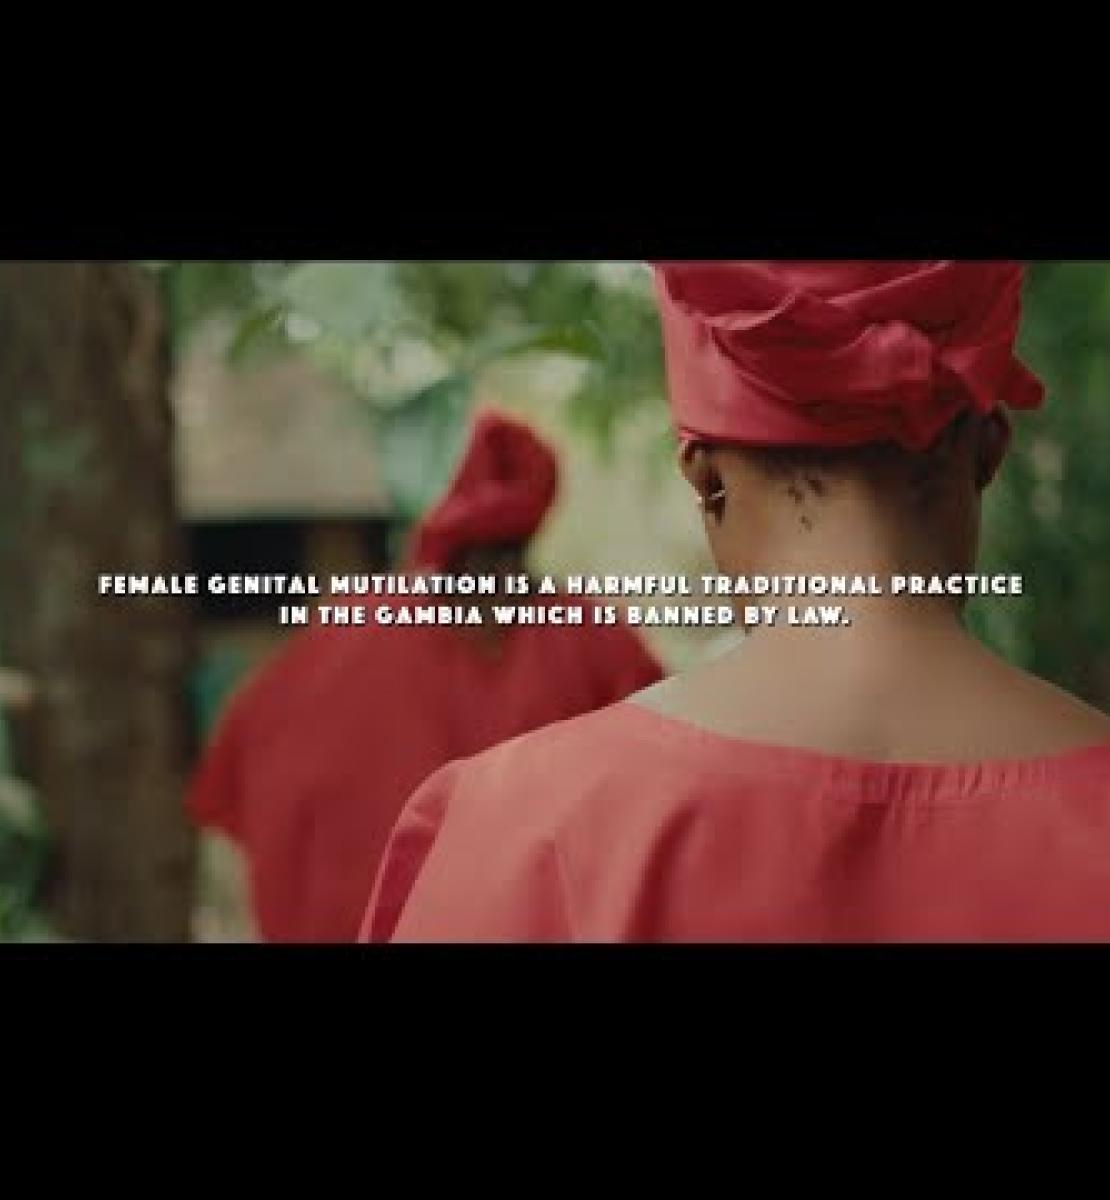 Una nueva canción multilingüe apela a acabar con la mutilación genital femenina en África